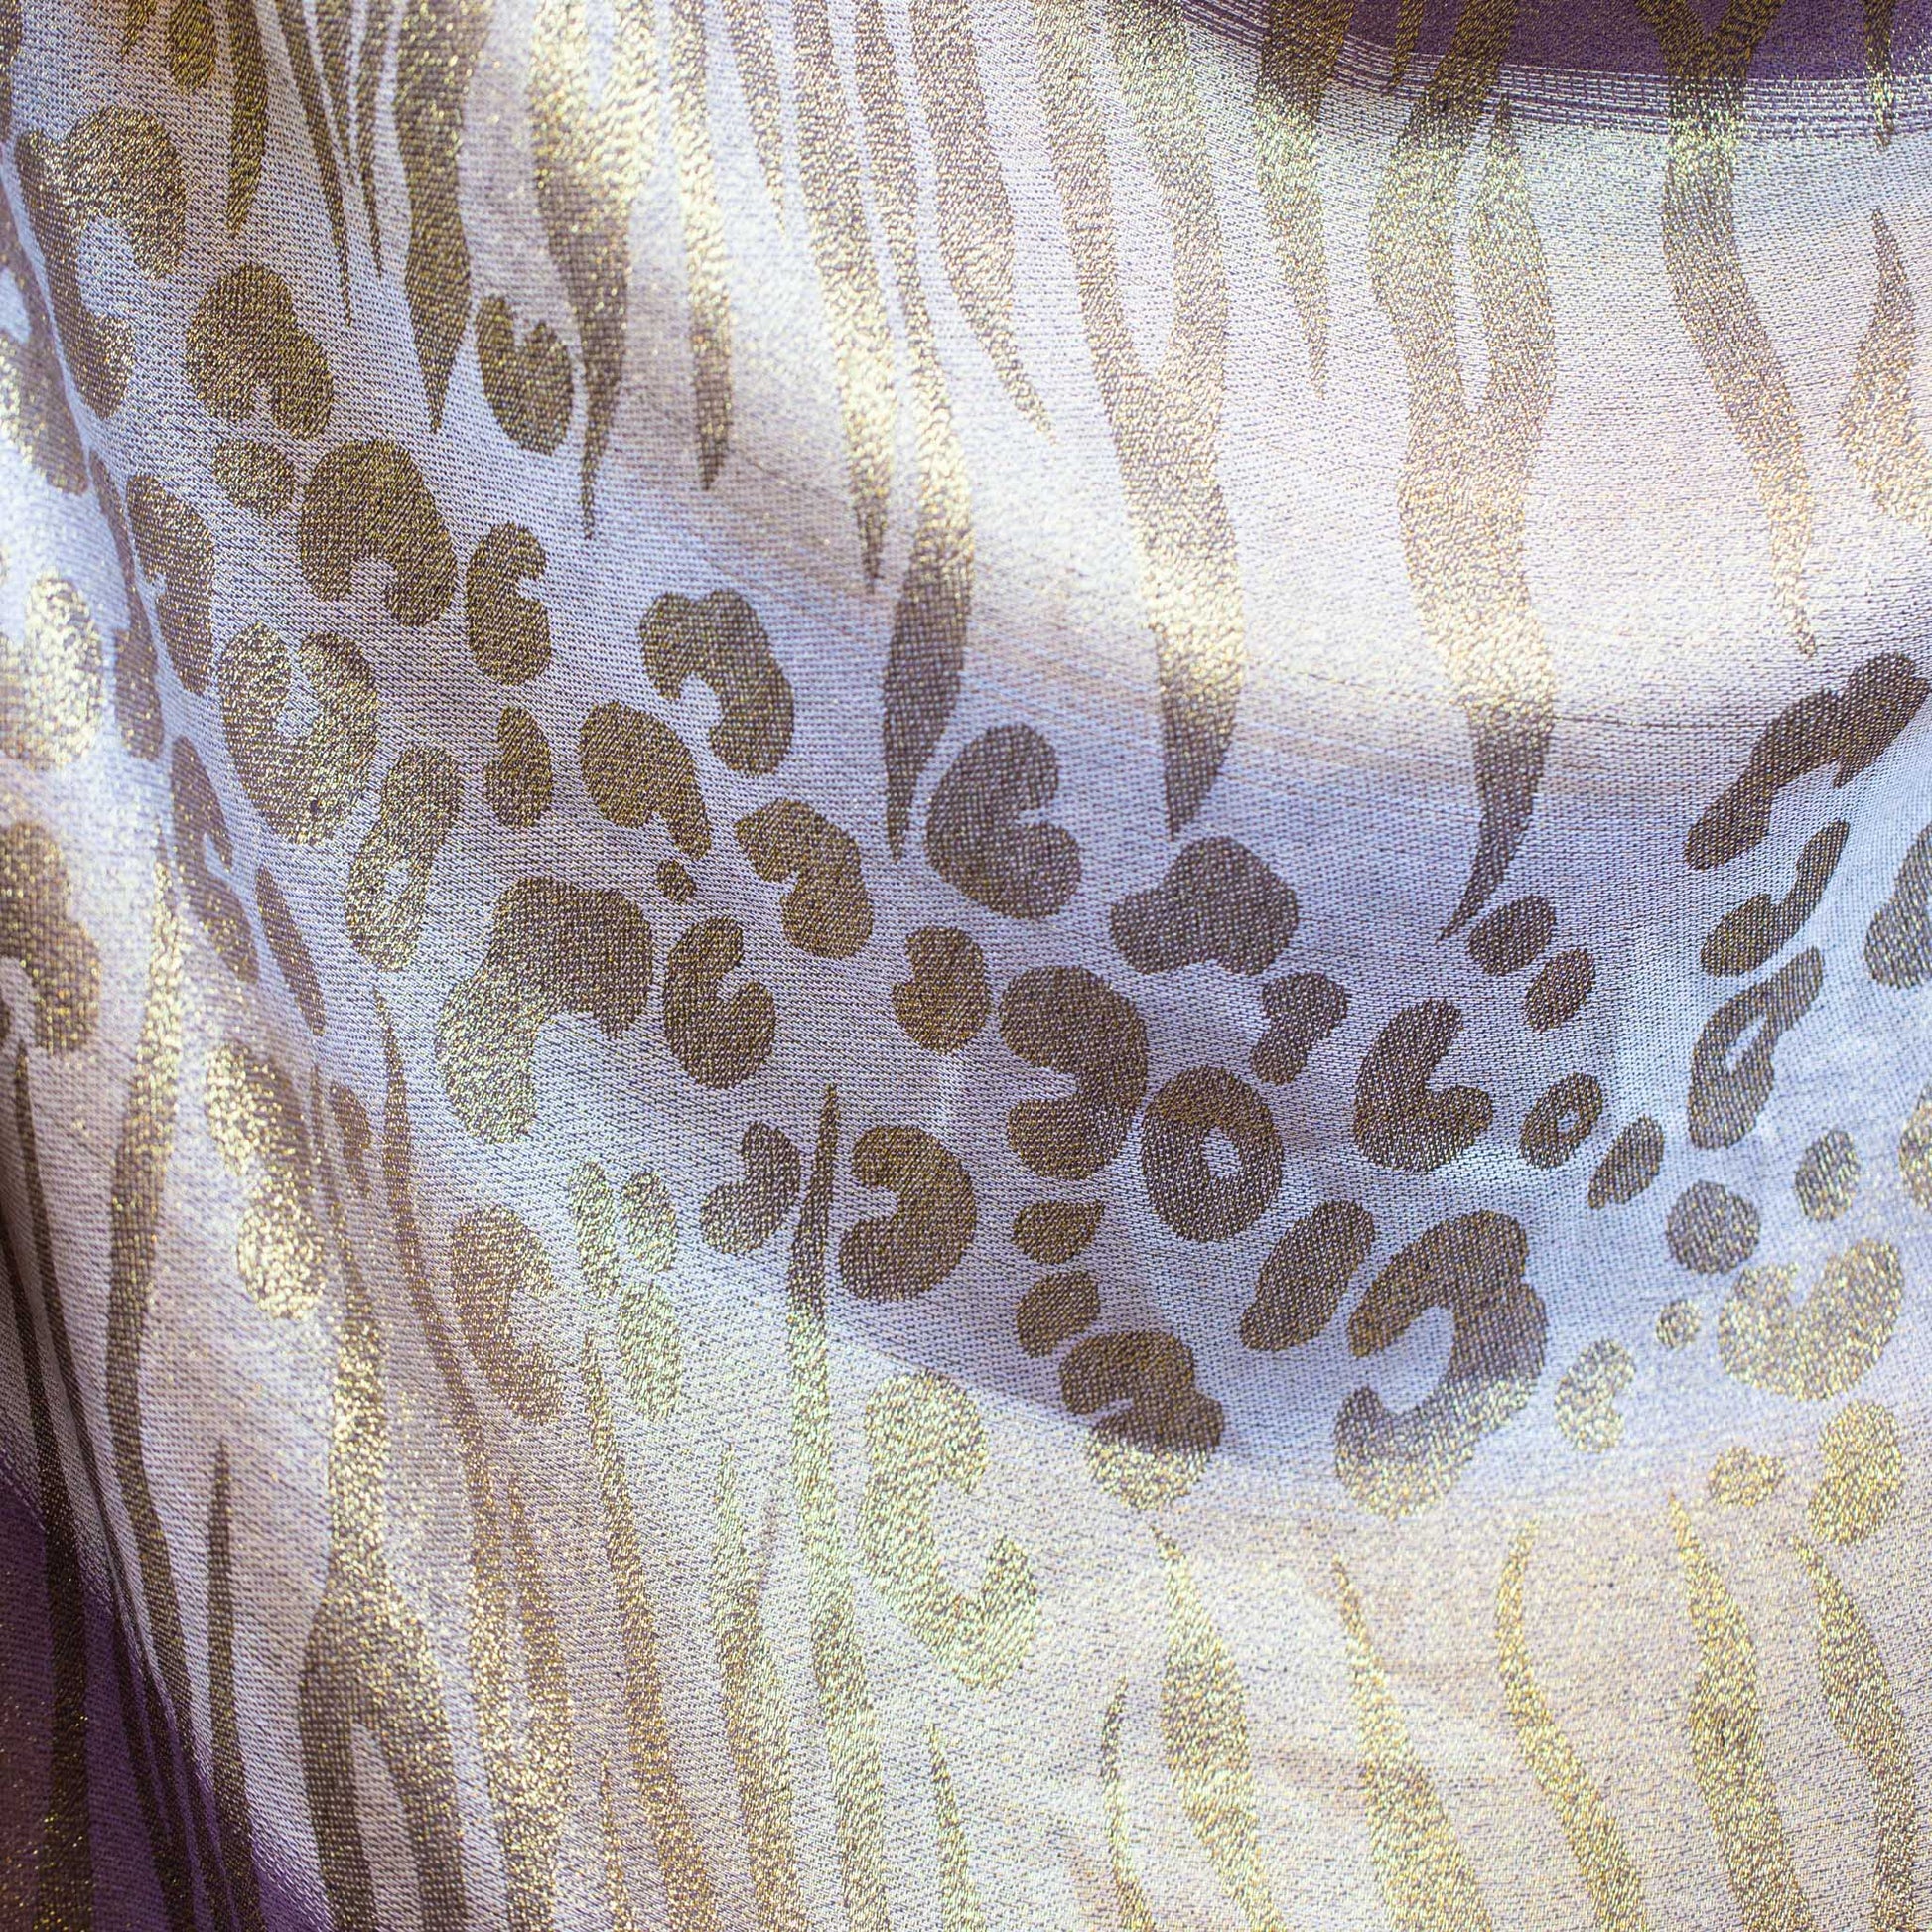 Eșarfă damă cu animal print, fir sclipitor și franjuri, 180 x 70 cm - Bej, Auriu